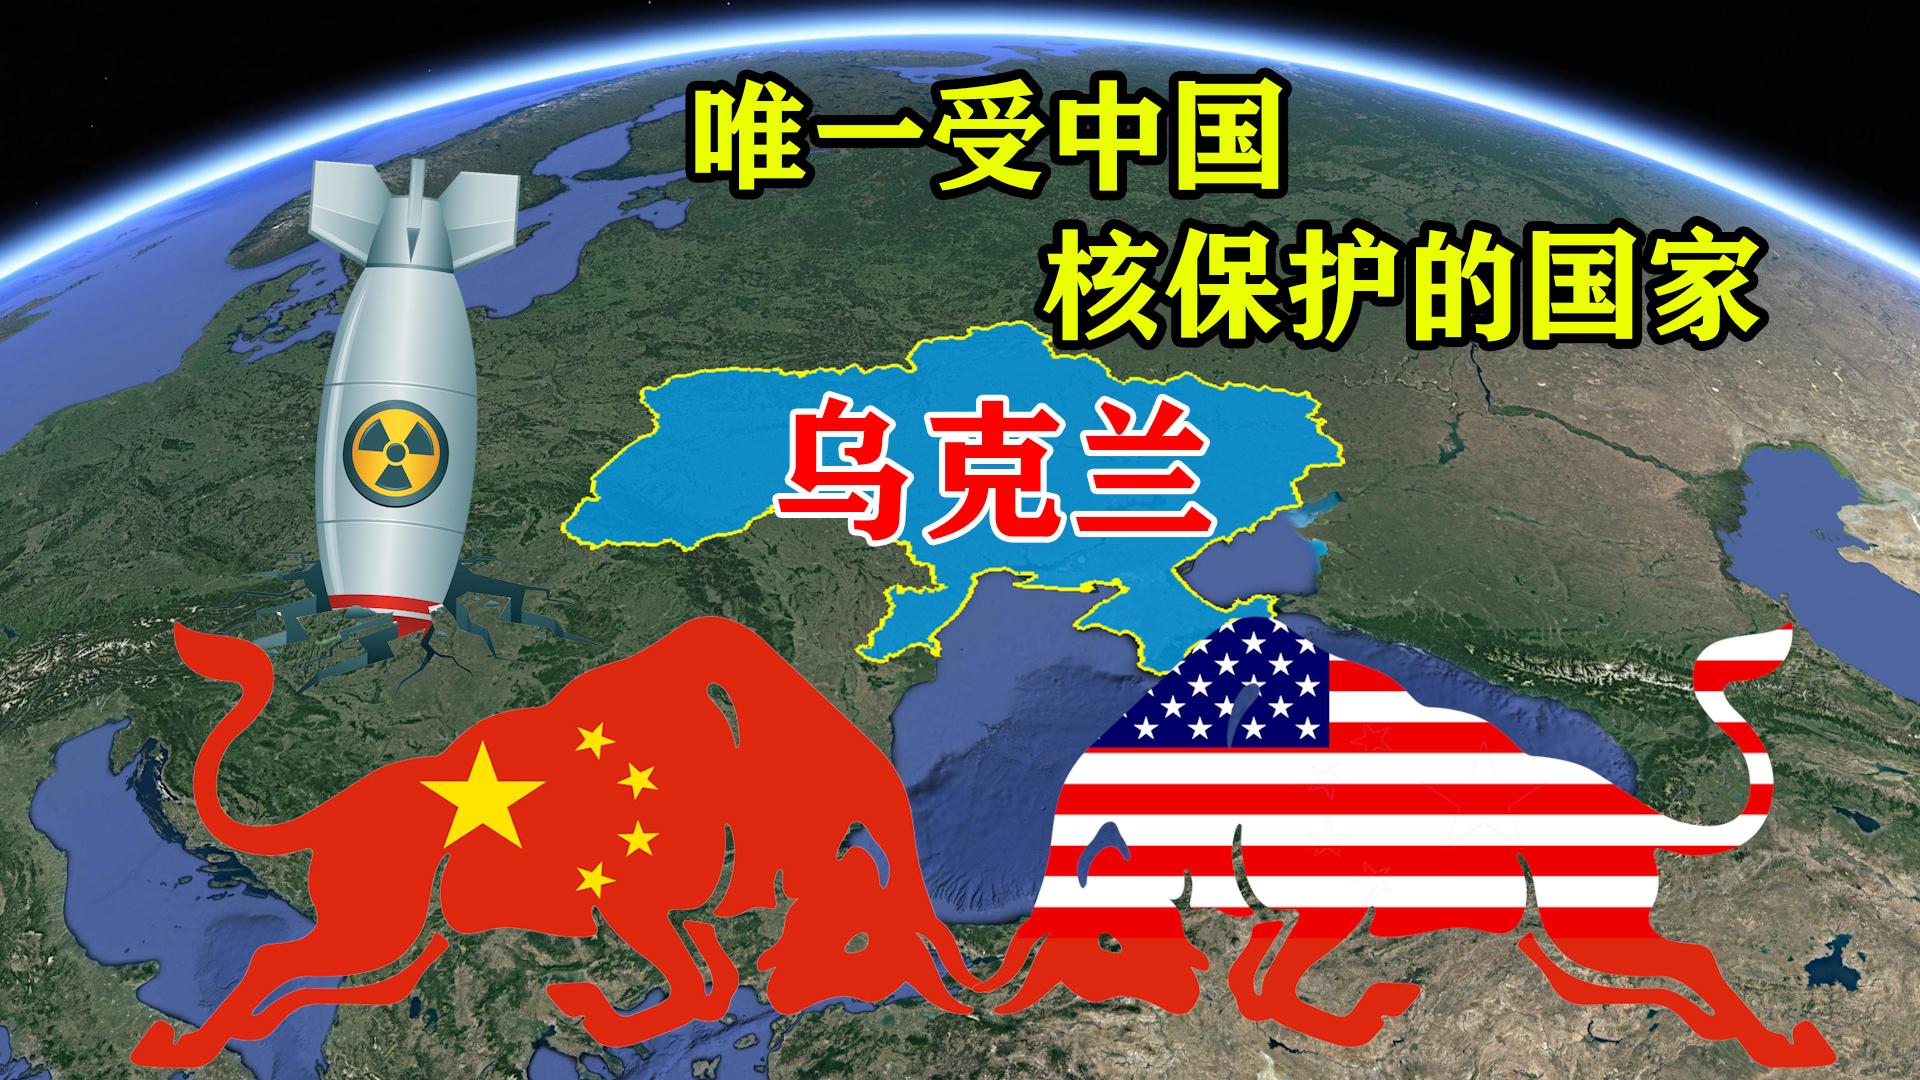 中国核保护的乌克兰为何跟美国来往密切和俄罗斯矛盾重重